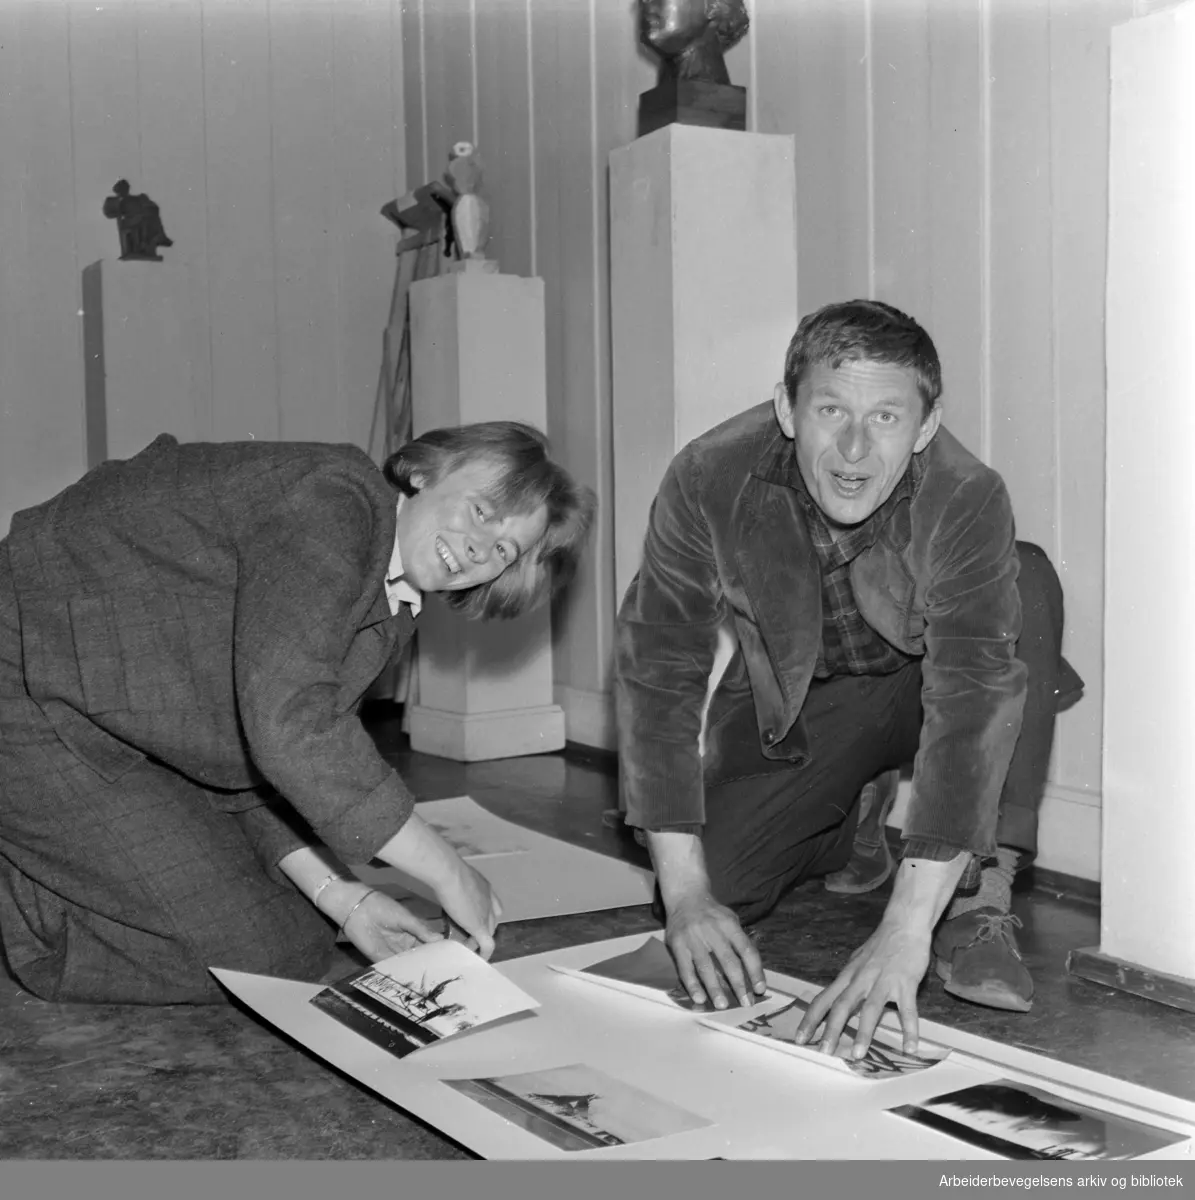 Utstilling på UKS i september 1960. Unge kunstneres samfund. Annasif Døhlen (Döhlen) og Per Ung under montering av utstilling med elever av Per Palle Storm.